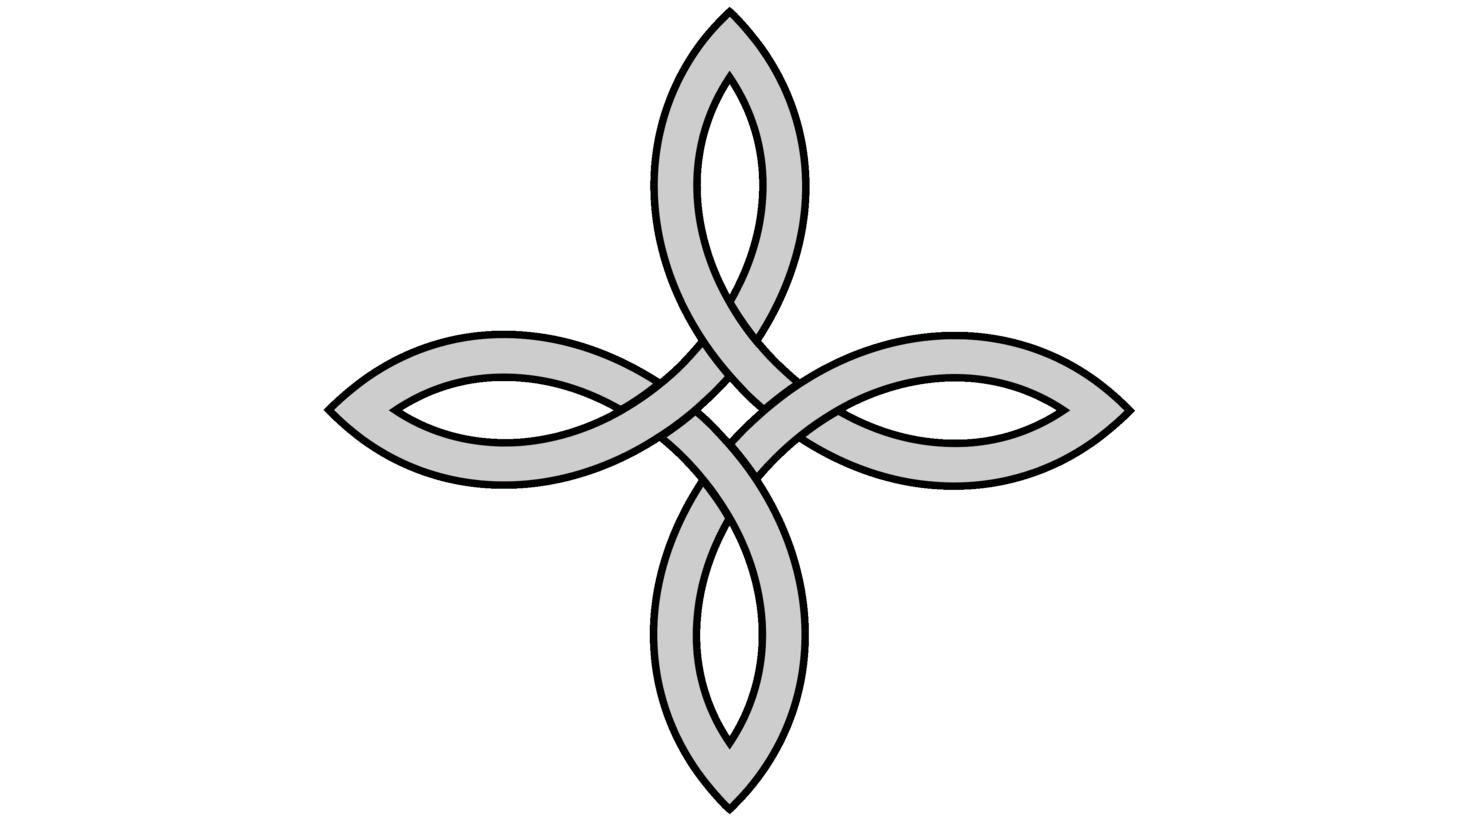 Celtic bowen knot logo